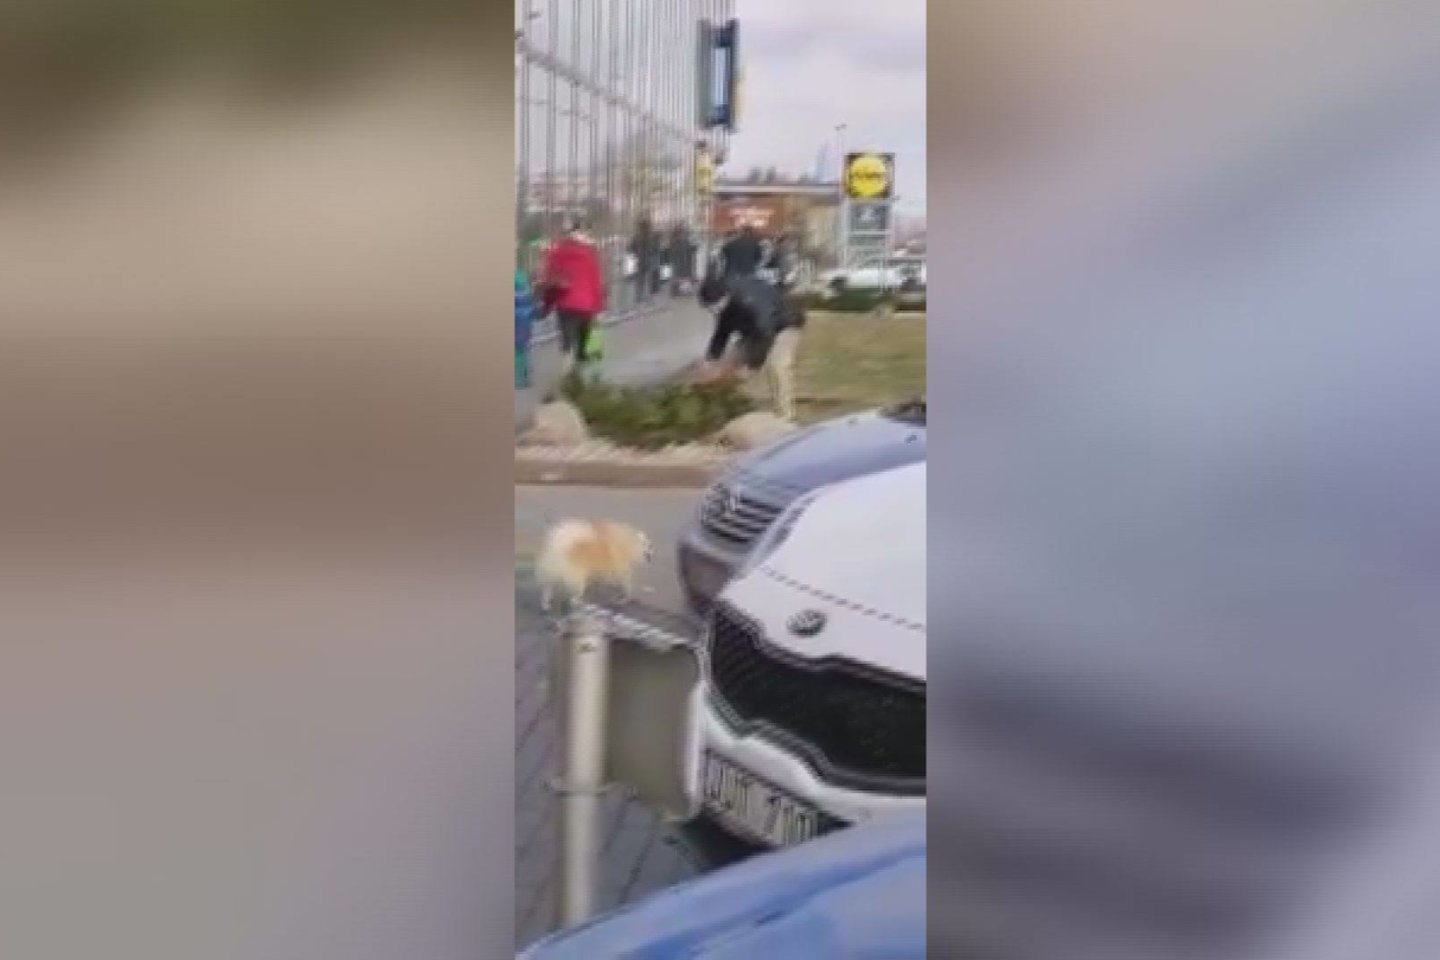  Pilietiškas šiaulietis nufilmavo, kaip vagišius bandė įsibrauti į automobilį. <br> Stop kadras iš facebook tinkle paviešinto vaizdo įrašo.